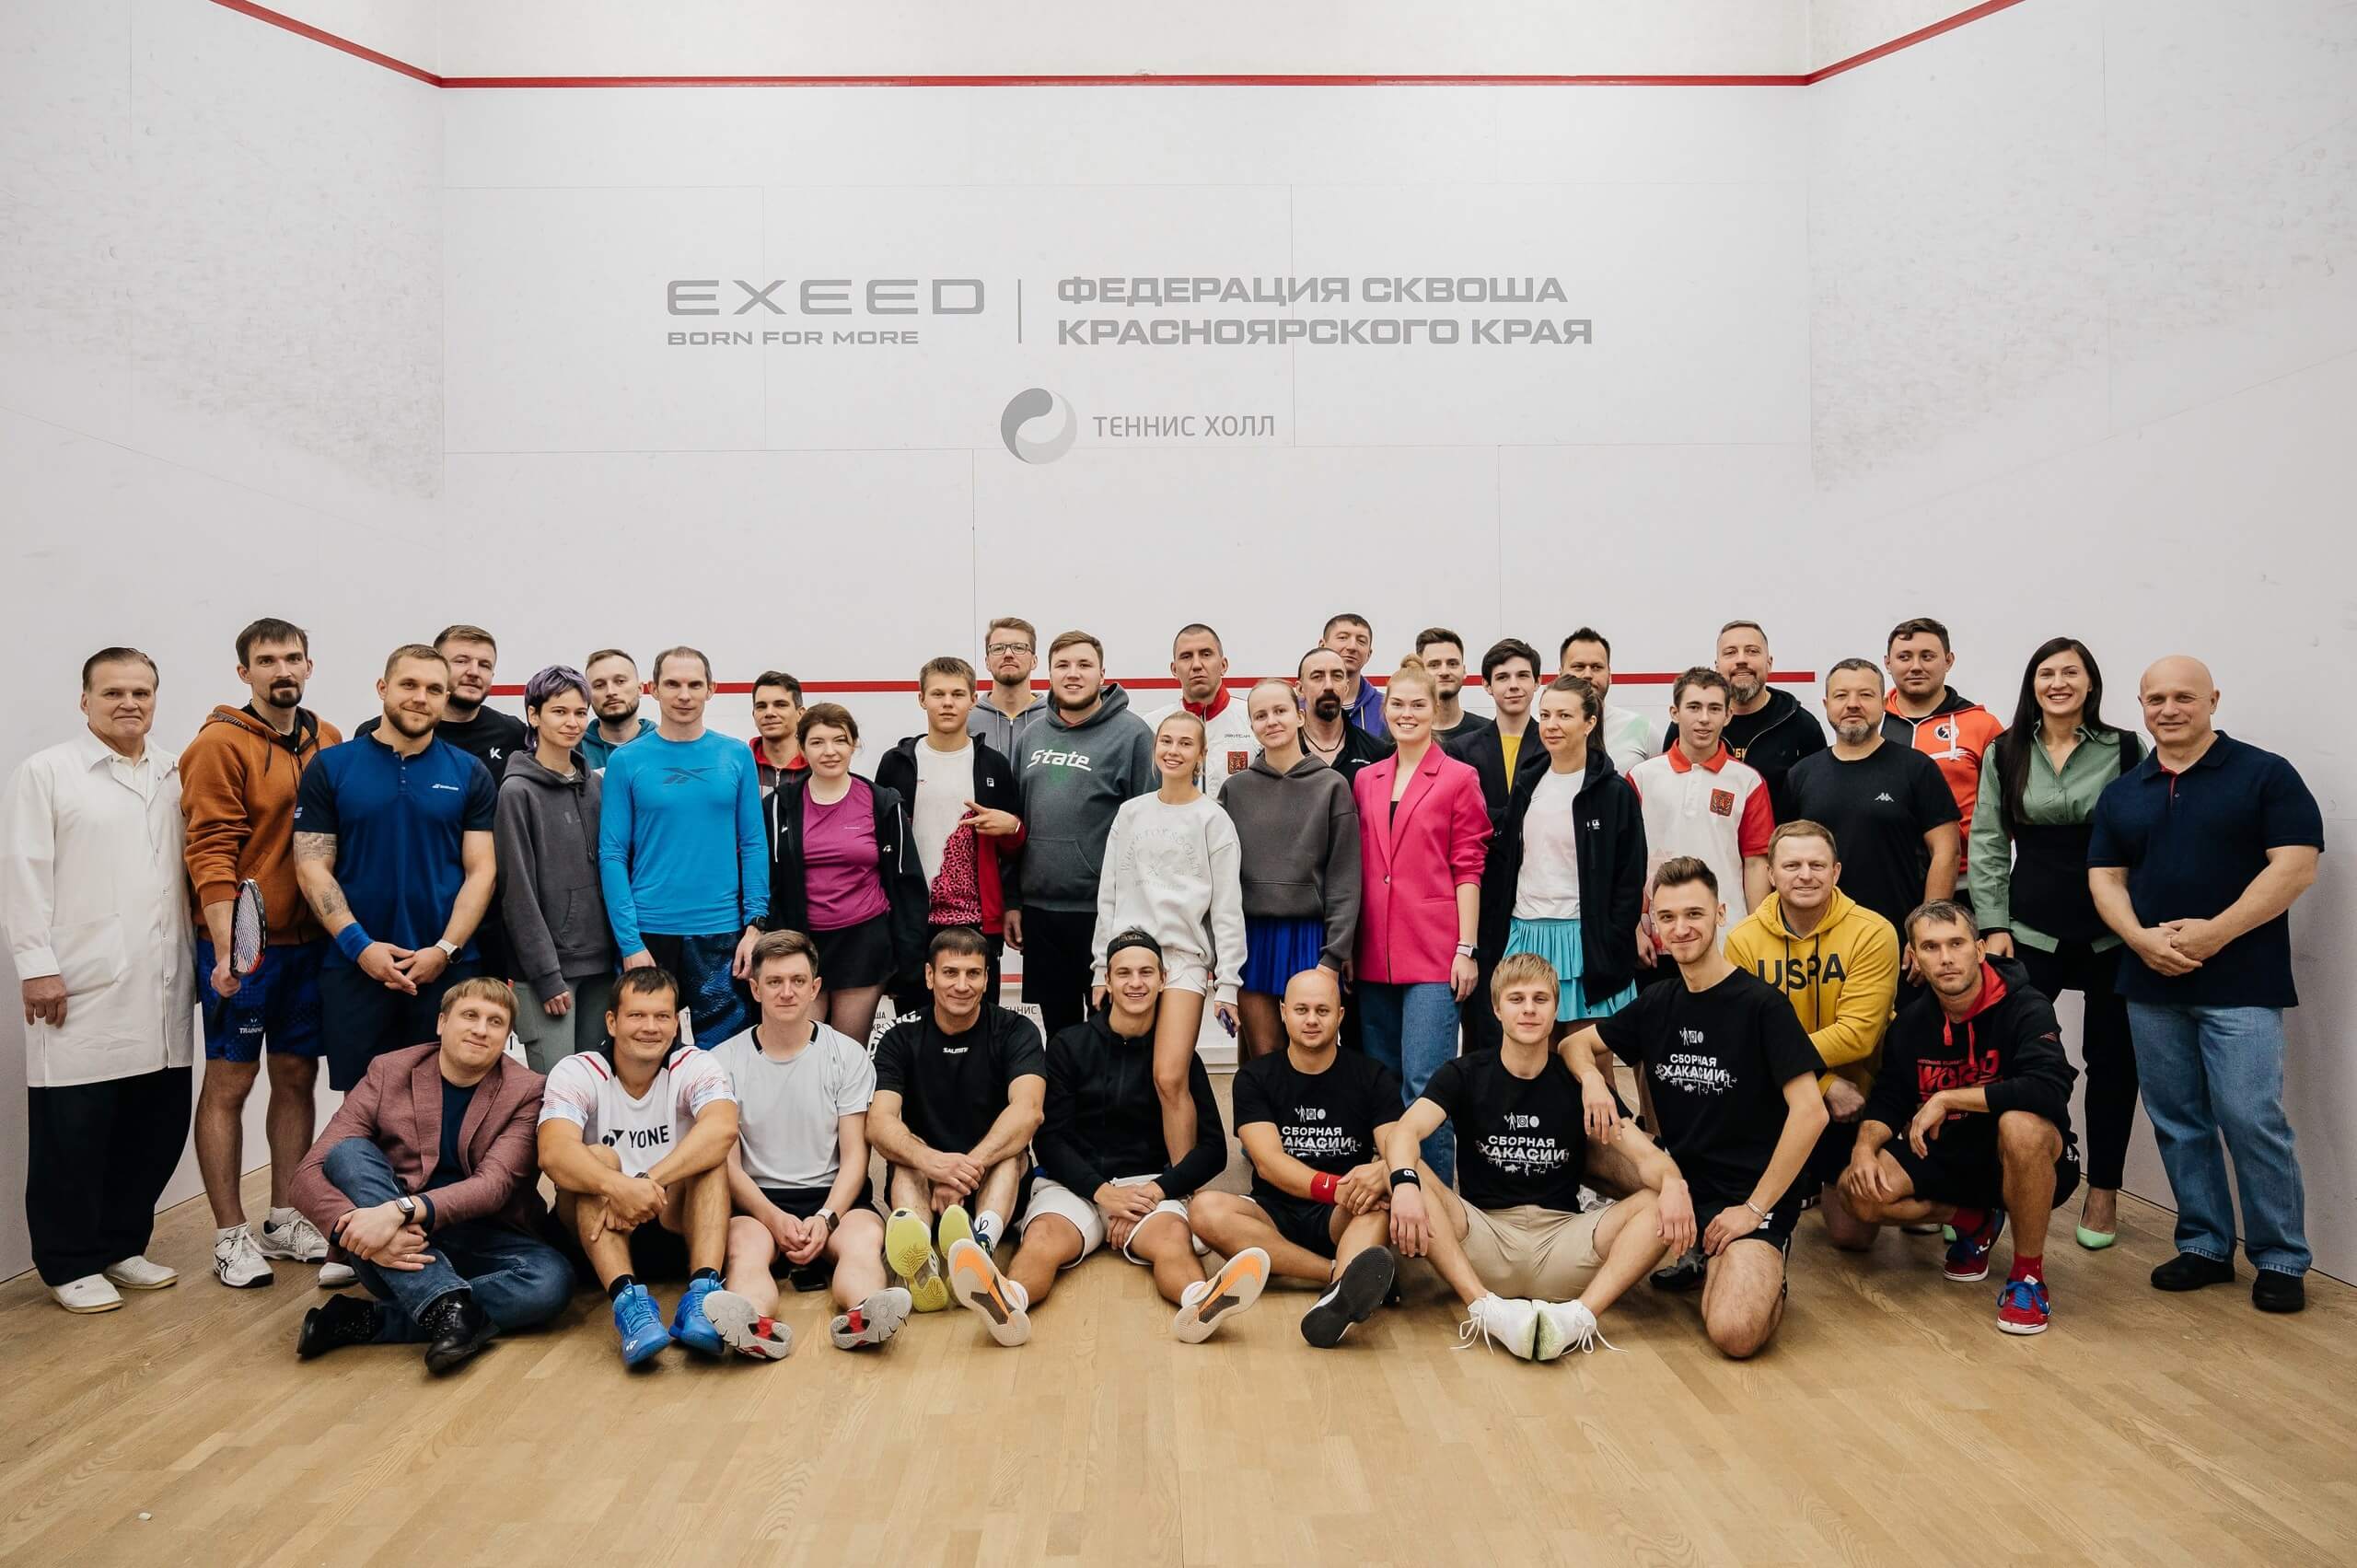 EXEED Центр Медведь стал генеральным партнером Чемпионата Сибирского Федерального Округа по сквошу своей мечты.